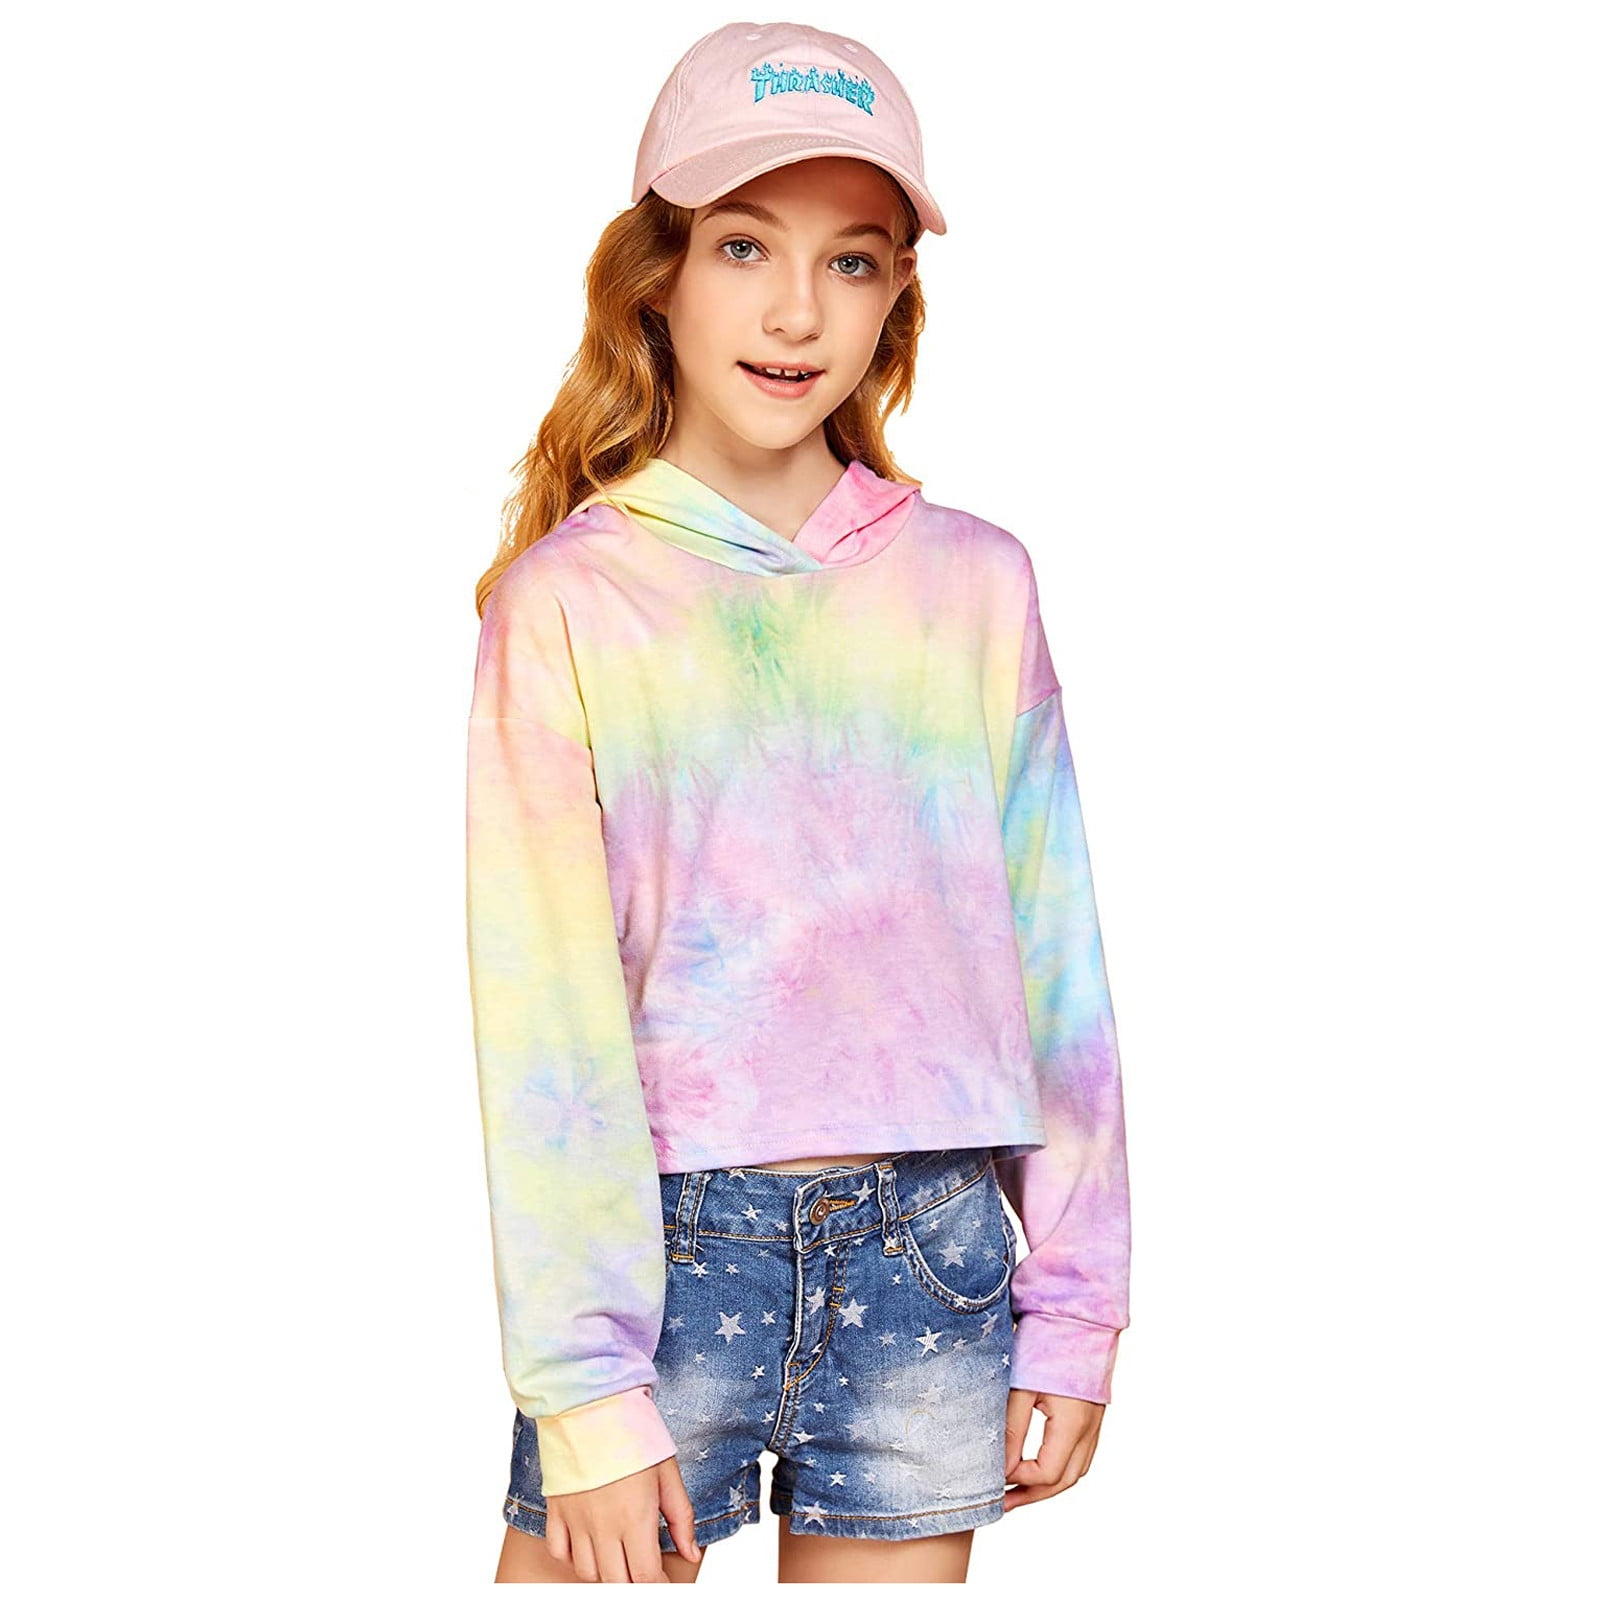 Kids Teen Girls Crop Tops Tie-Dye Hoodies Long Sleeve Pullover Sweatshirts Tops